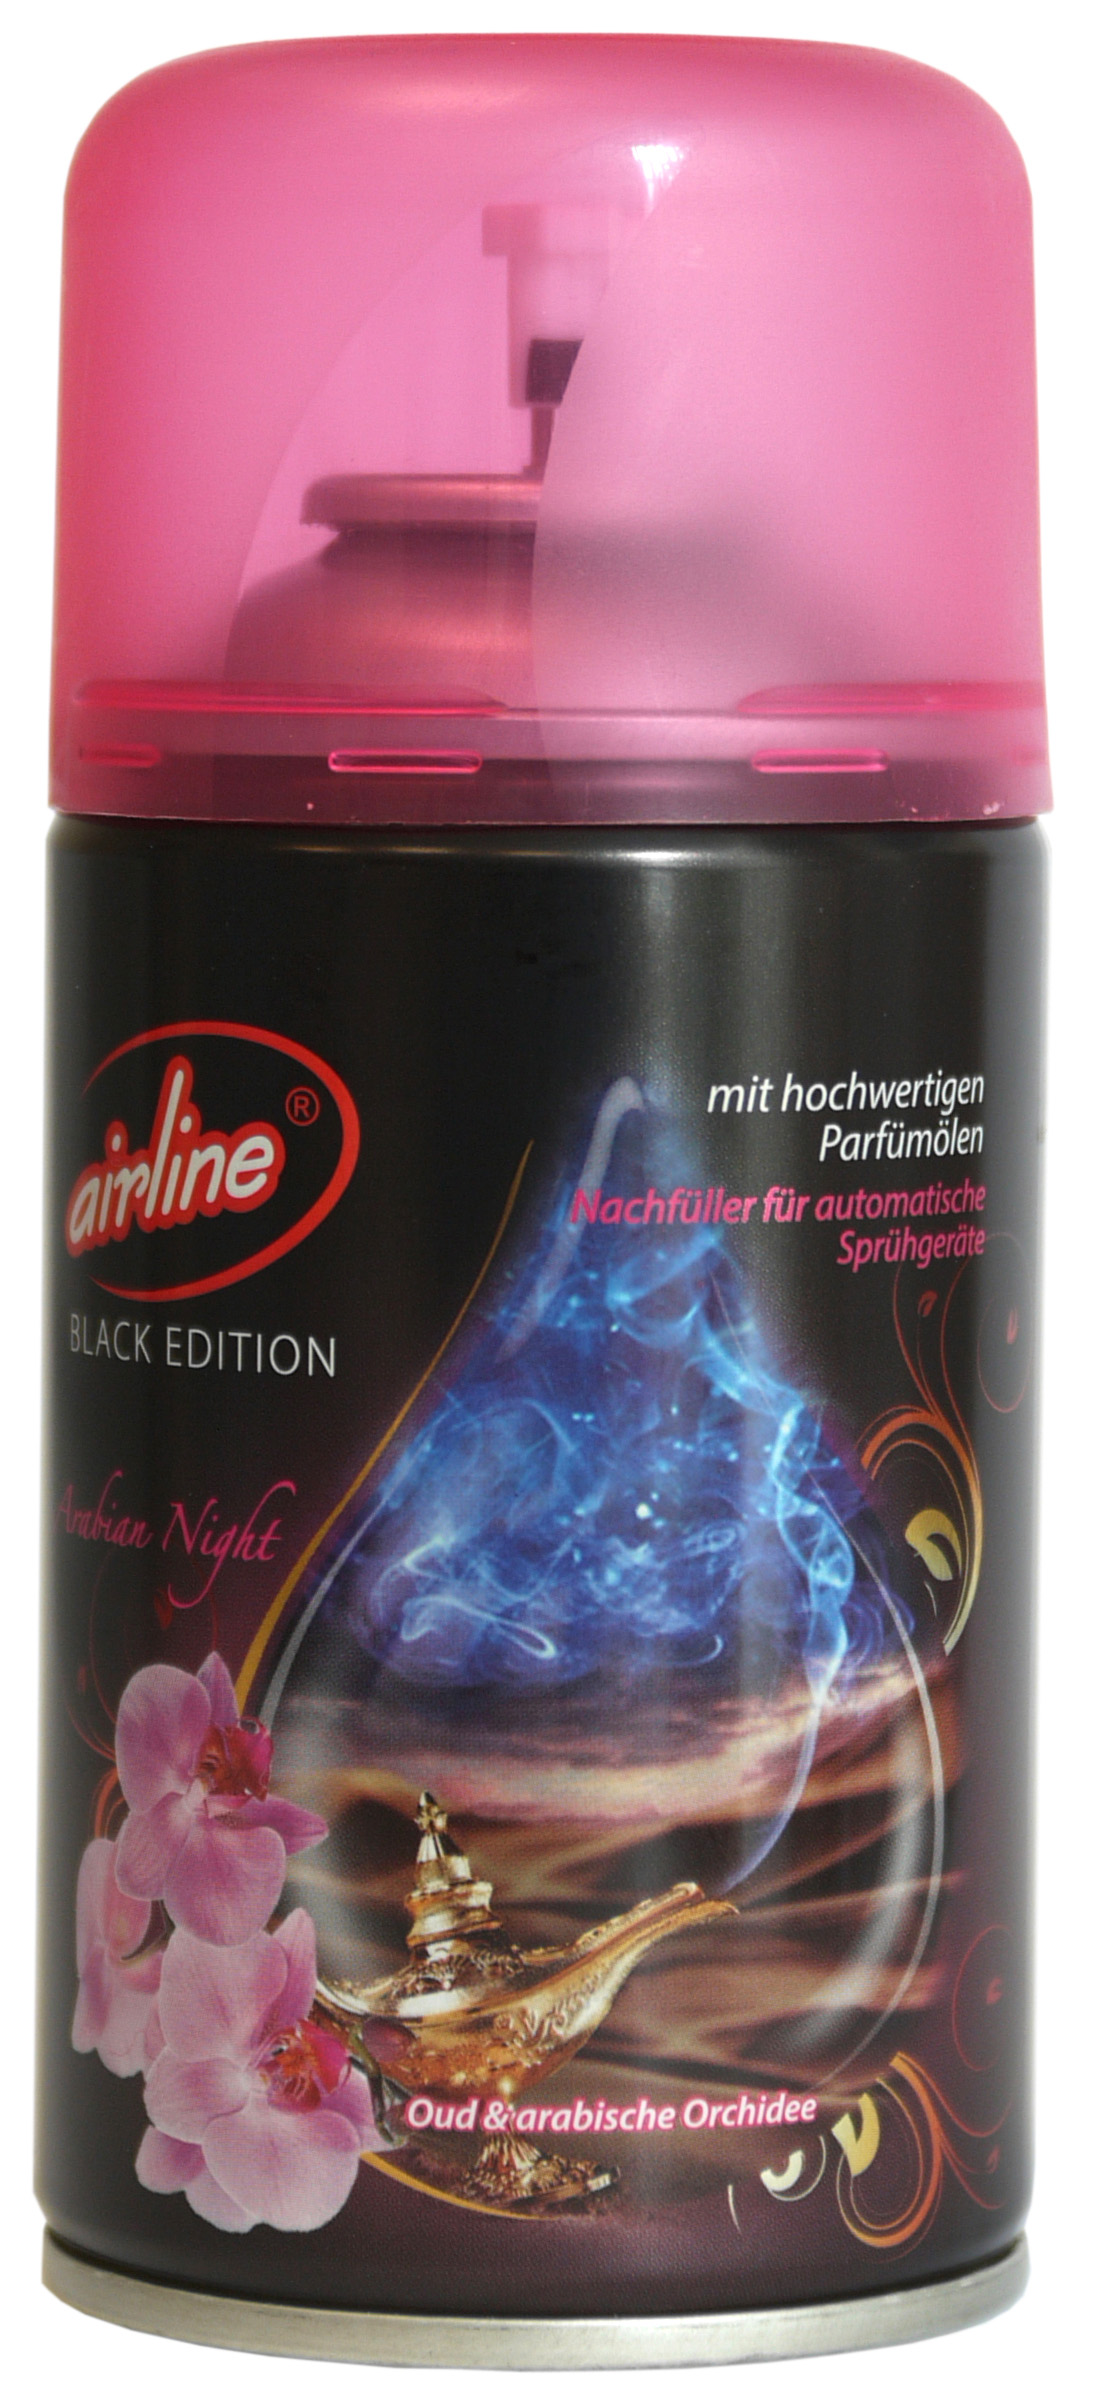 00537 - airline Black Edition Arabian Night Nachfüllkartusche 250 ml